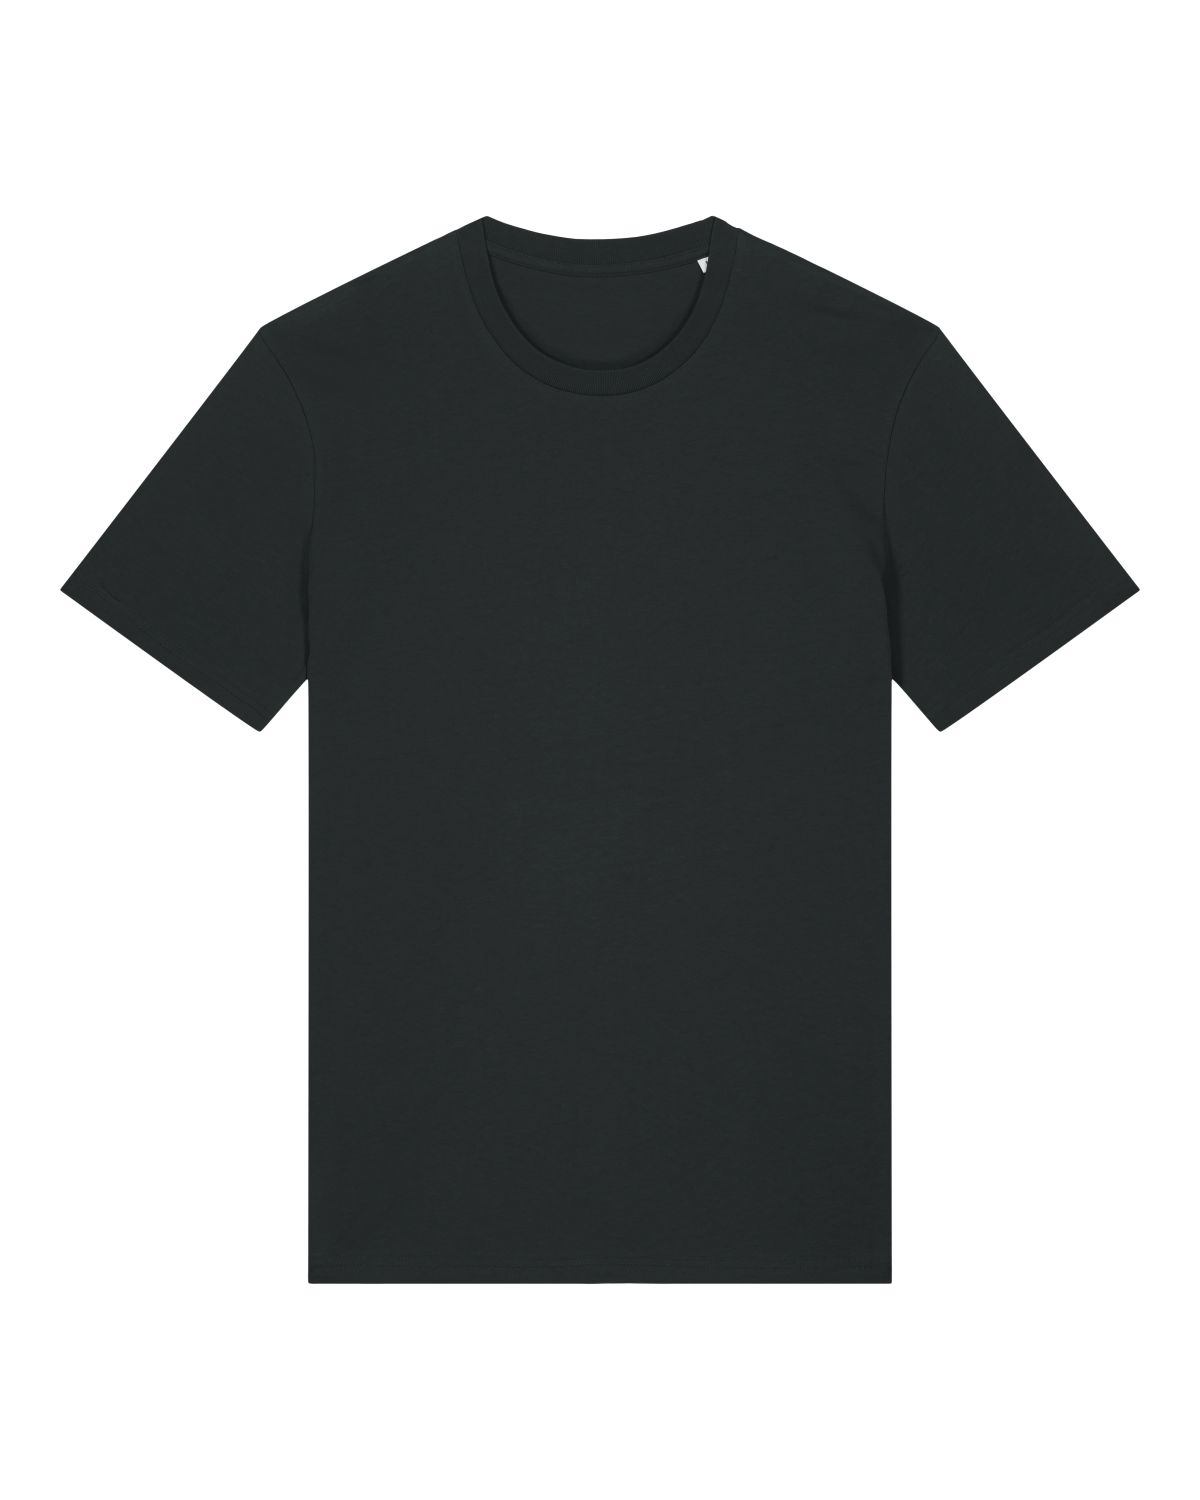 Stanley/Stella Unisex Basic Bio T-Shirt Crafter